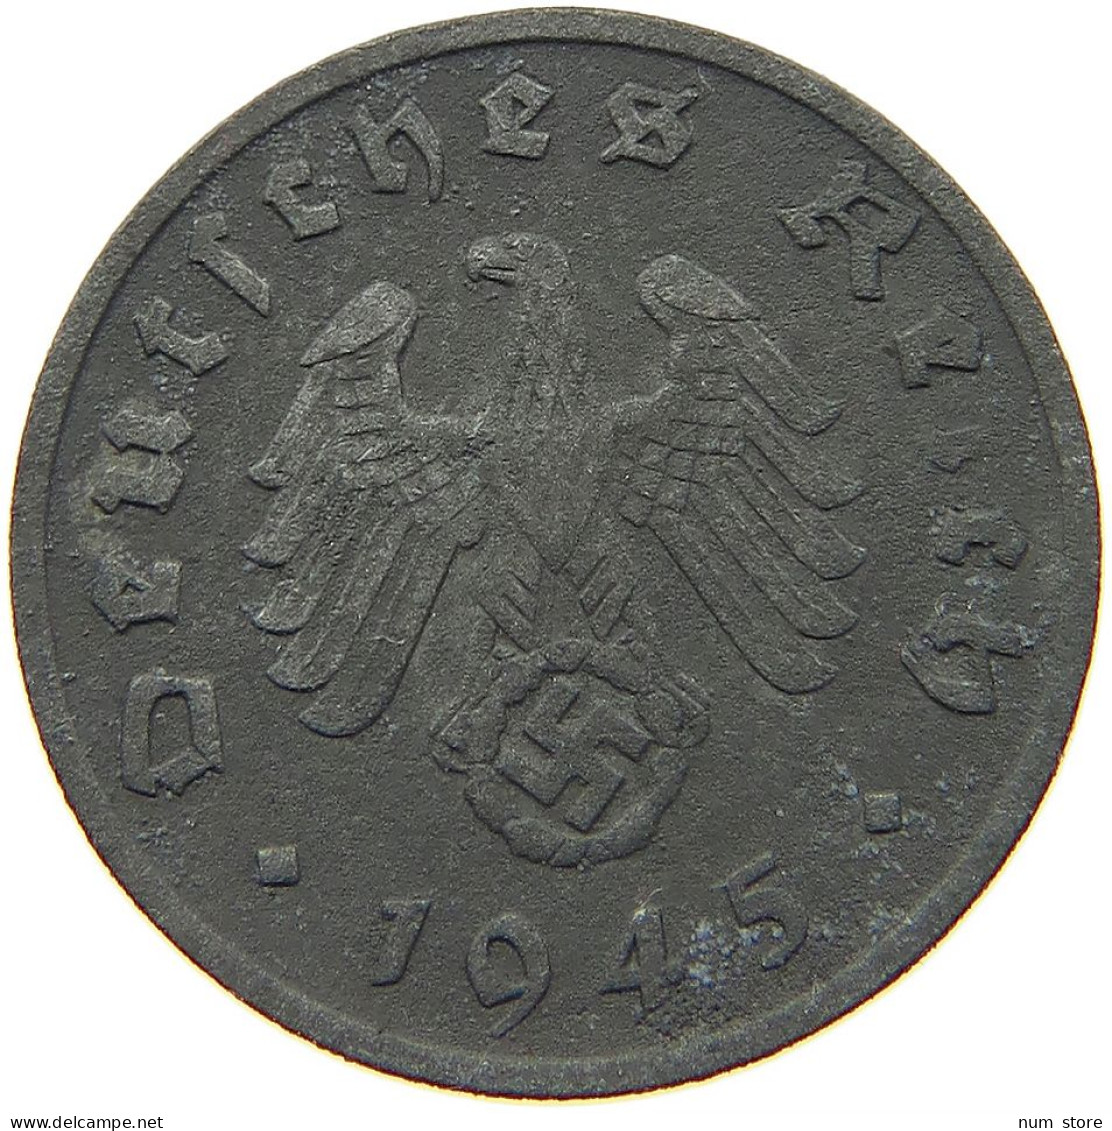 GERMANY 1 REICHSPFENNIG 1945 A #s088 0029 - 1 Reichspfennig